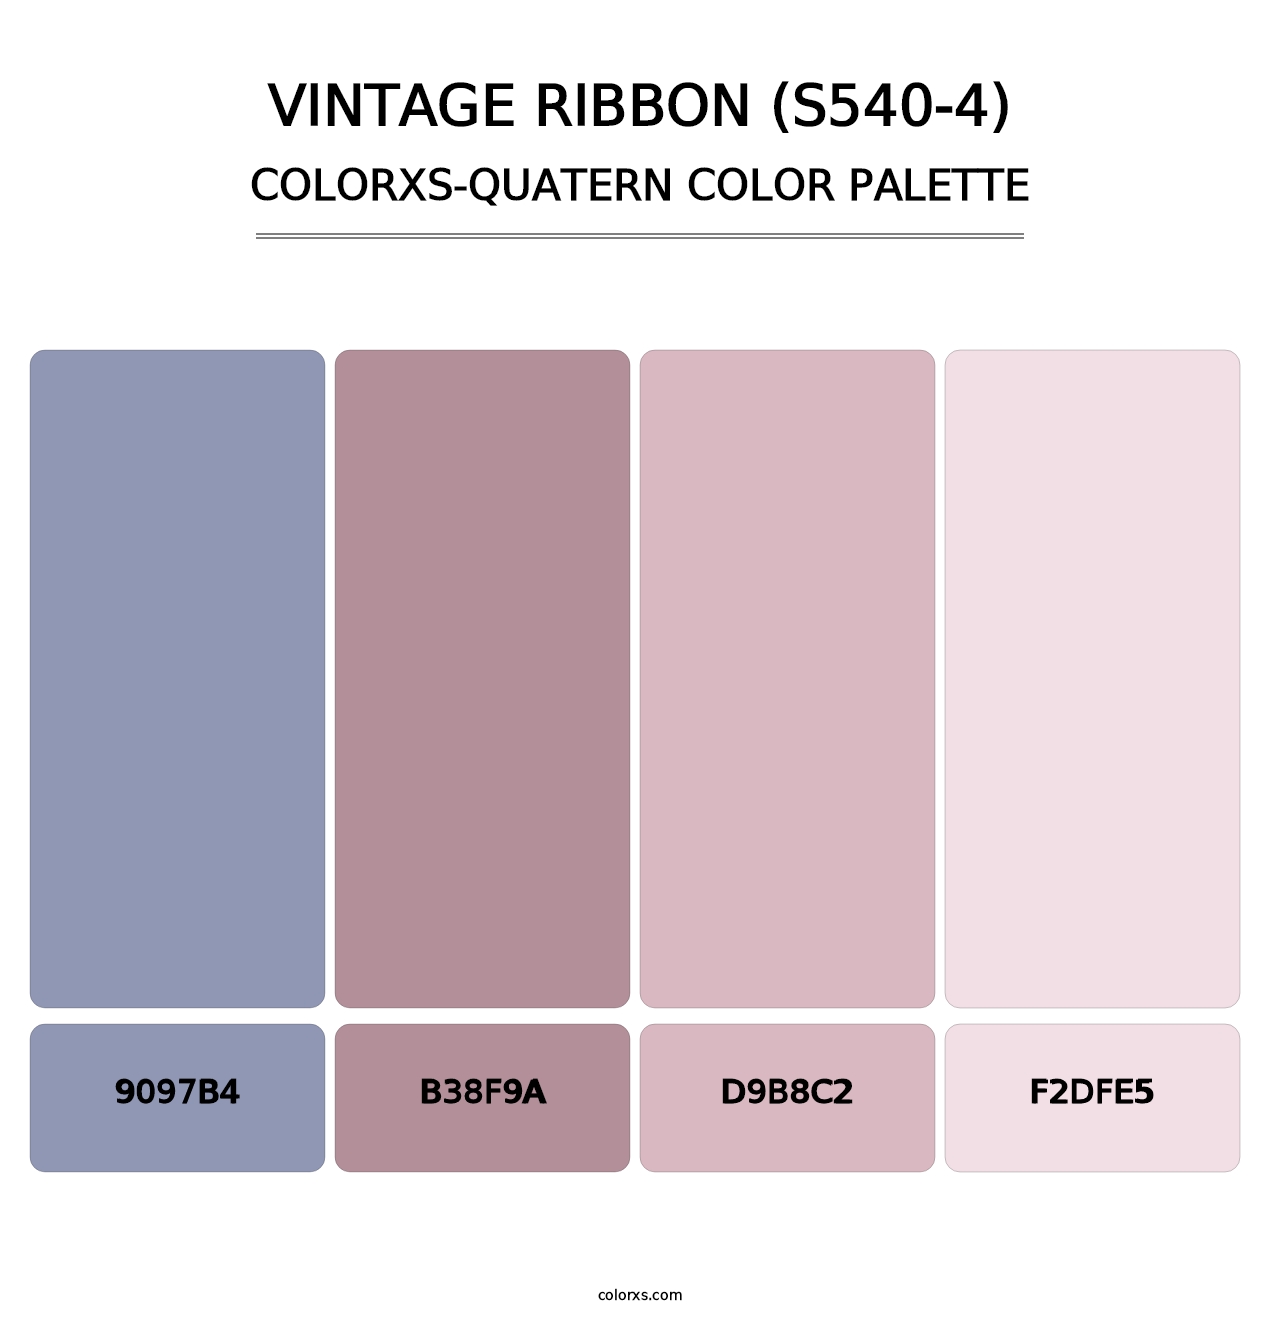 Vintage Ribbon (S540-4) - Colorxs Quatern Palette